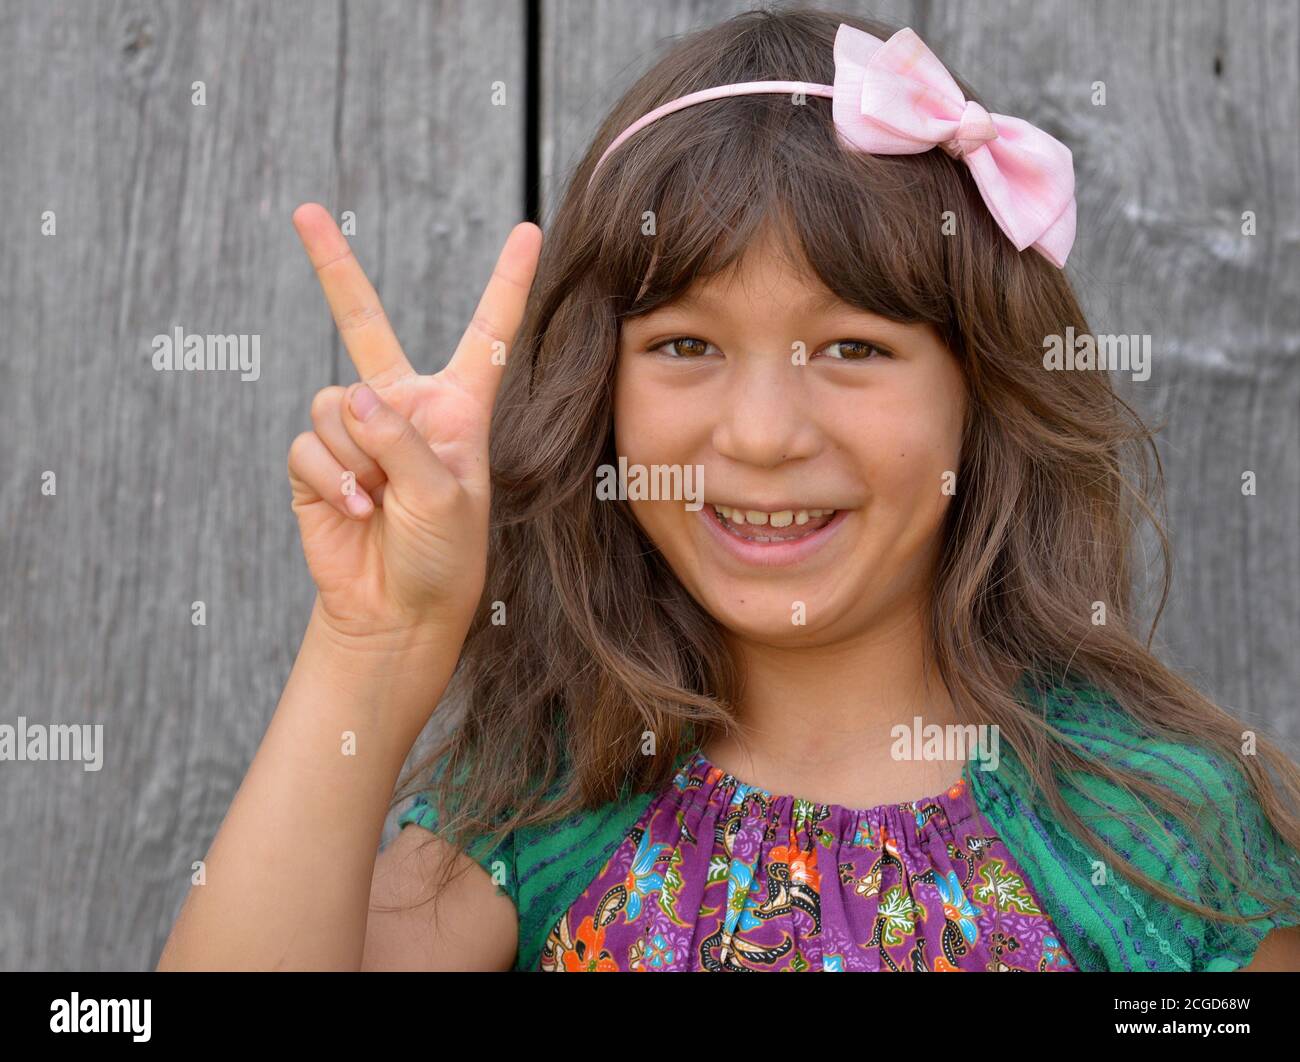 Mignon mixte-race petite fille (Asie de l'est / caucasien) montre avec sa main droite le signe de la main chinoise pour le numéro 2 (série de photos: N° d'image 2 de 10). Banque D'Images